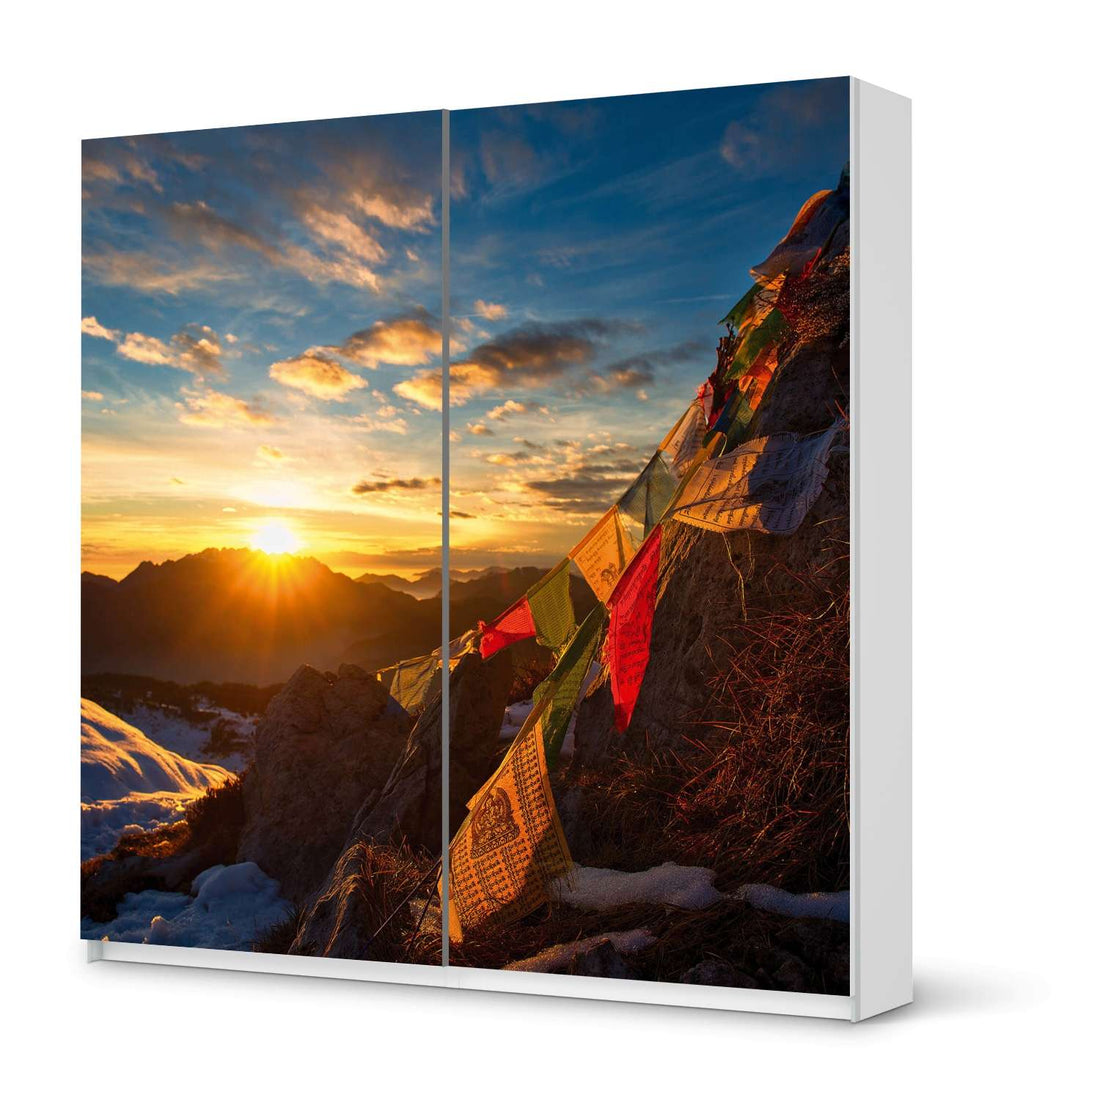 Möbel Klebefolie Tibet - IKEA Pax Schrank 201 cm Höhe - Schiebetür - weiss